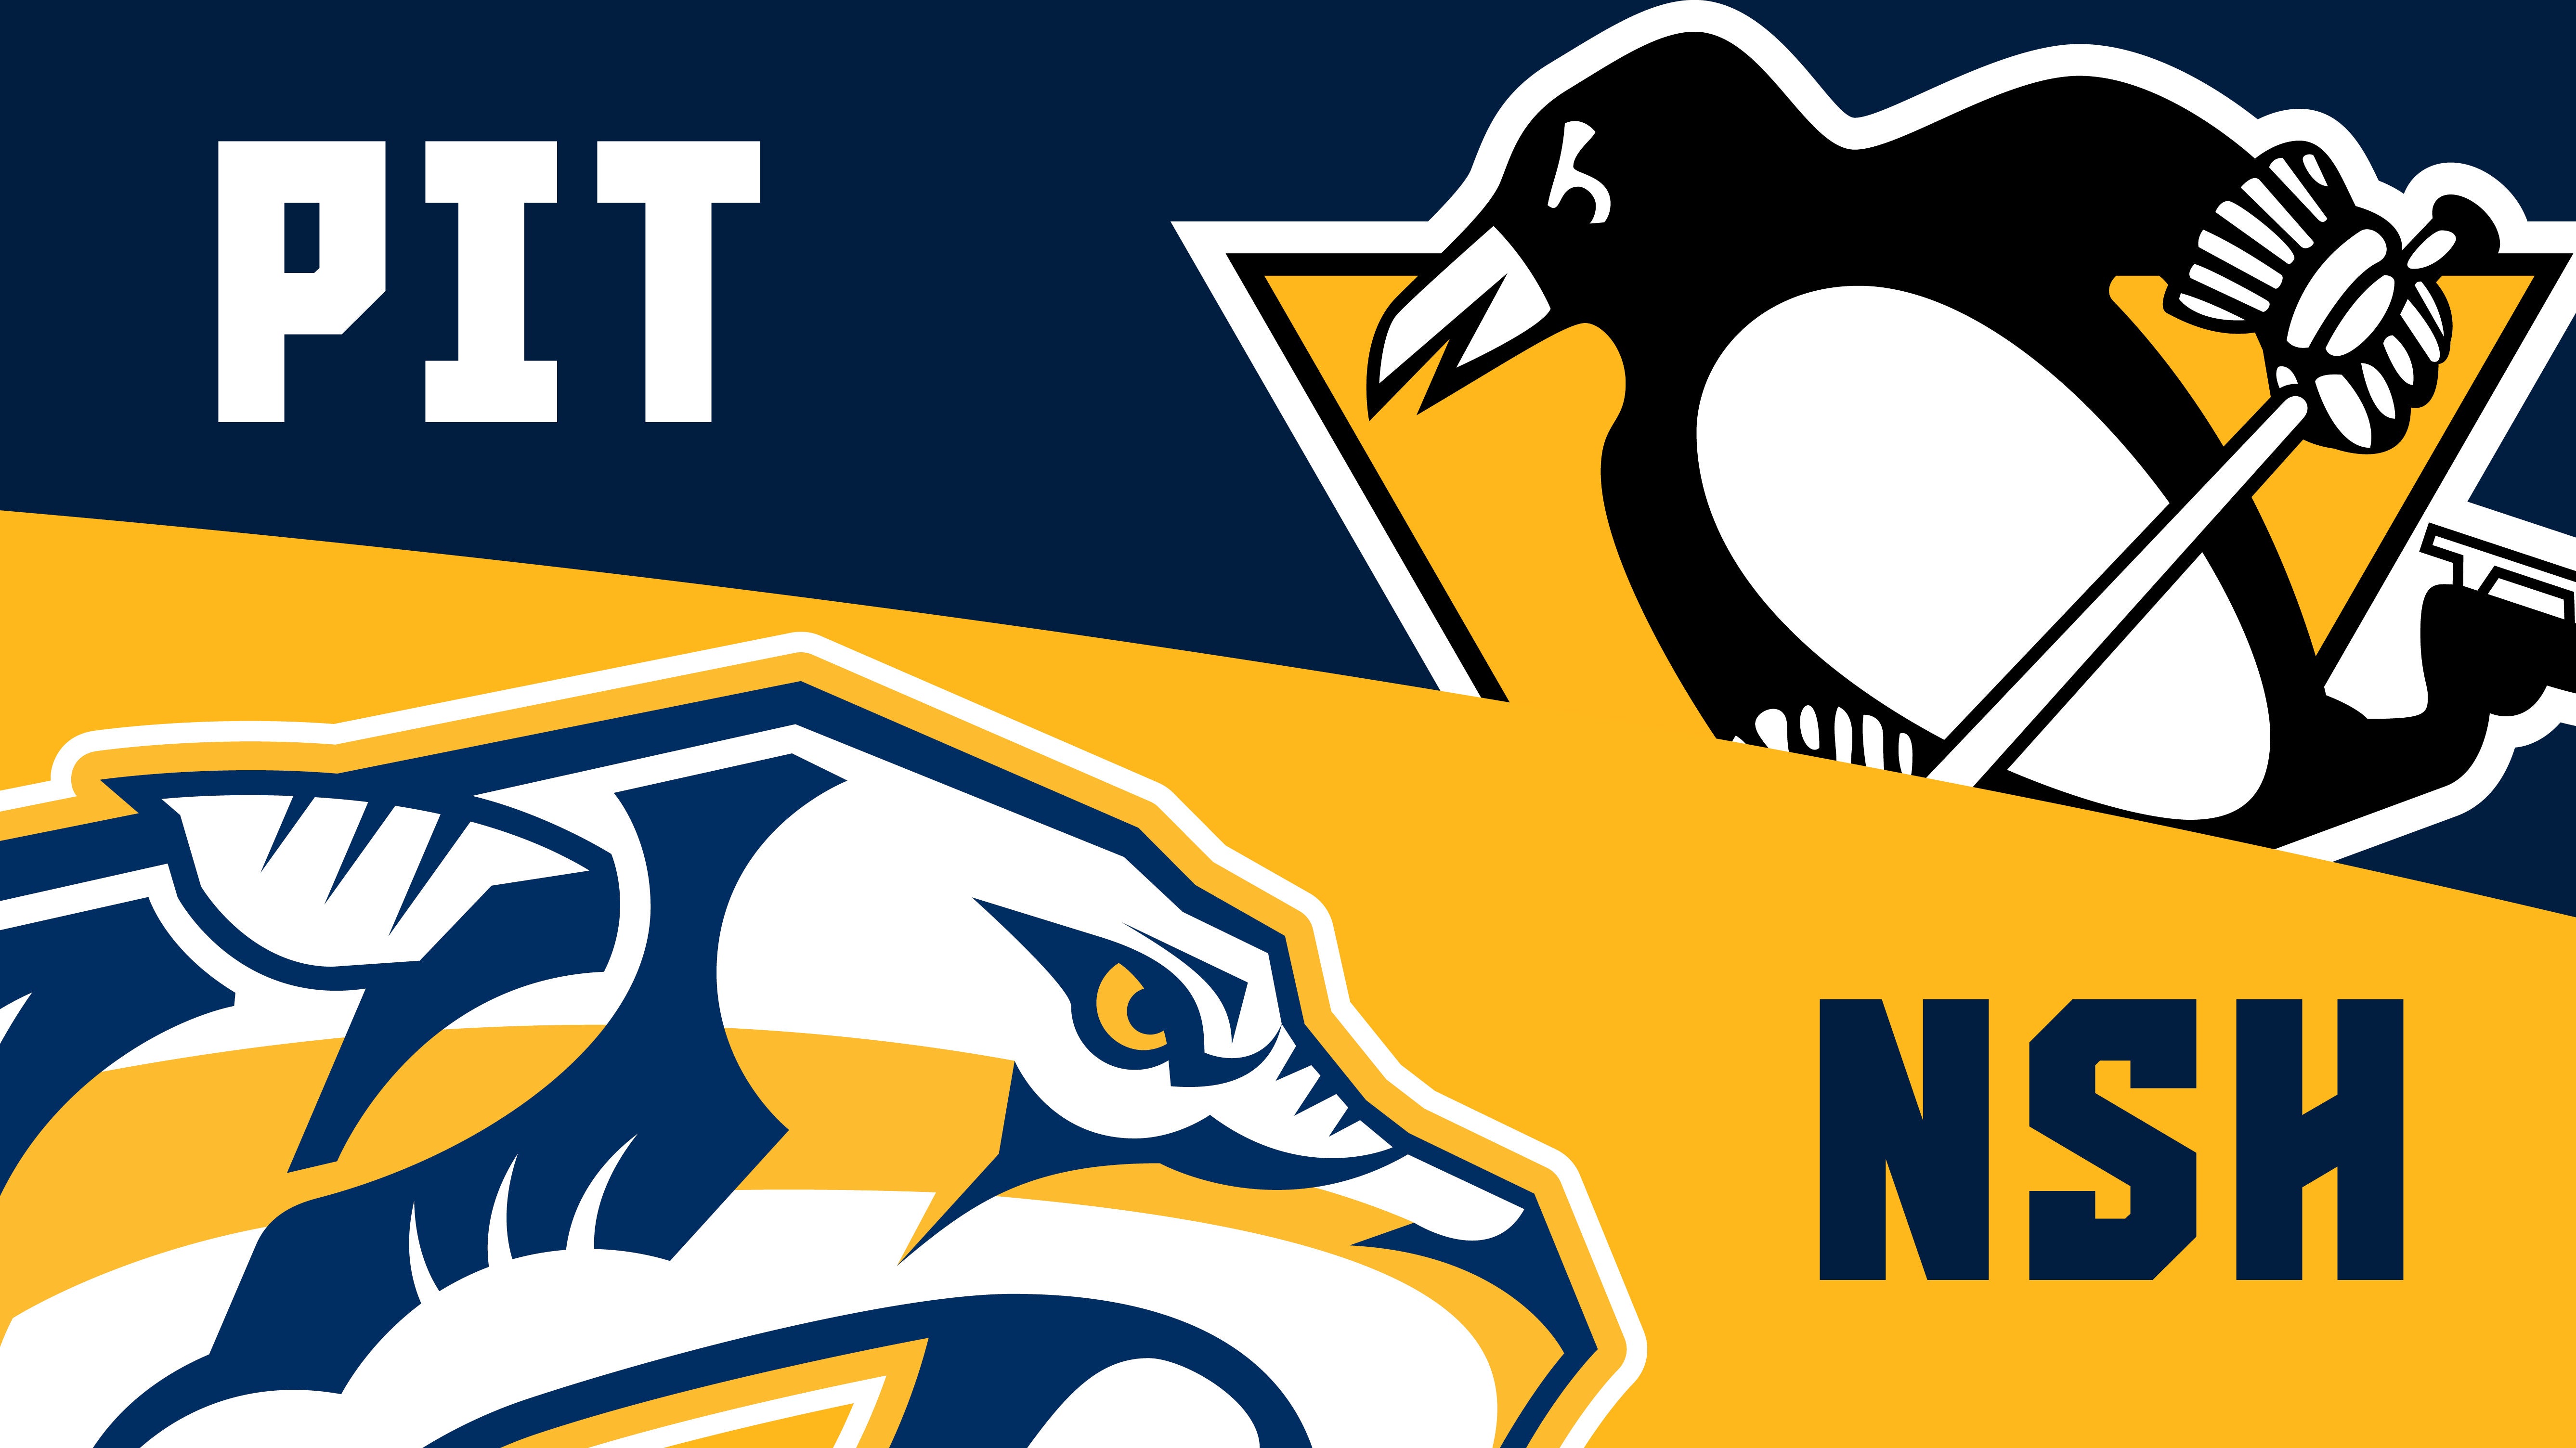 Photos: Nashville Predators vs. Pittsburgh Penguins